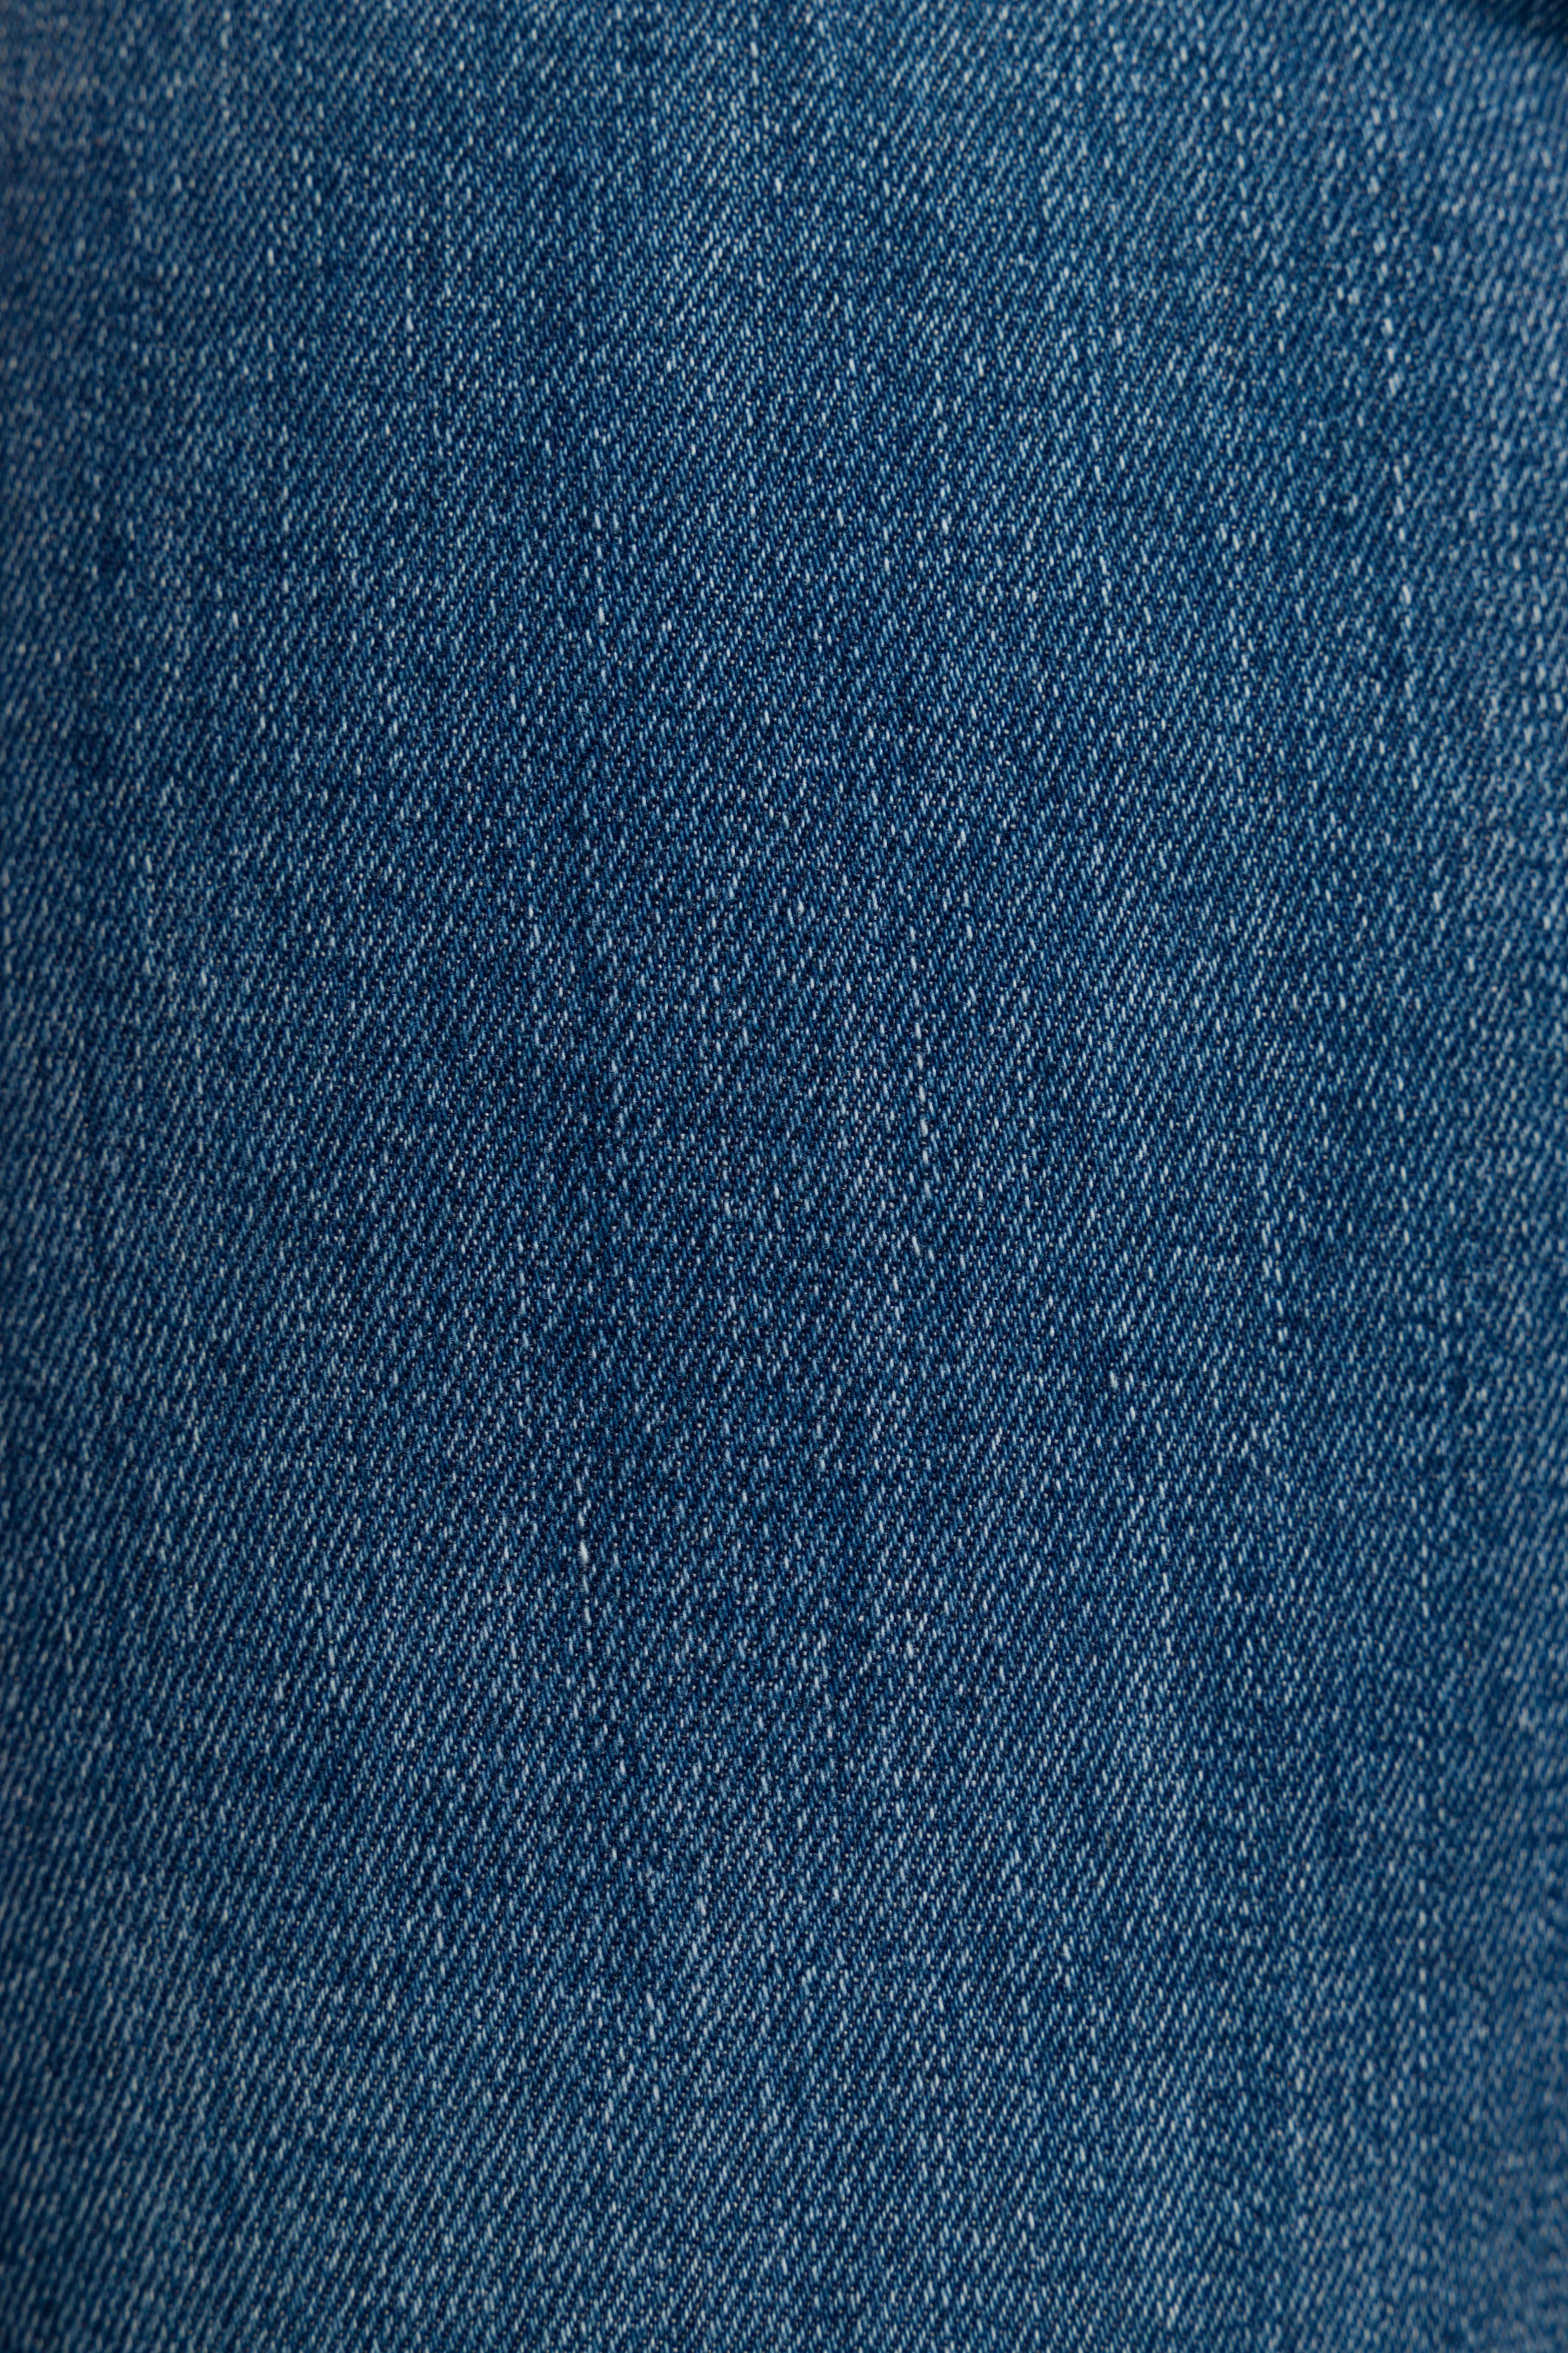 Tommy Jeans Skinny-fit-Jeans »SYLVIA HR SUPER SKNY«, Hochwertige Materialien für einen bequemen und perfekten Sitz.